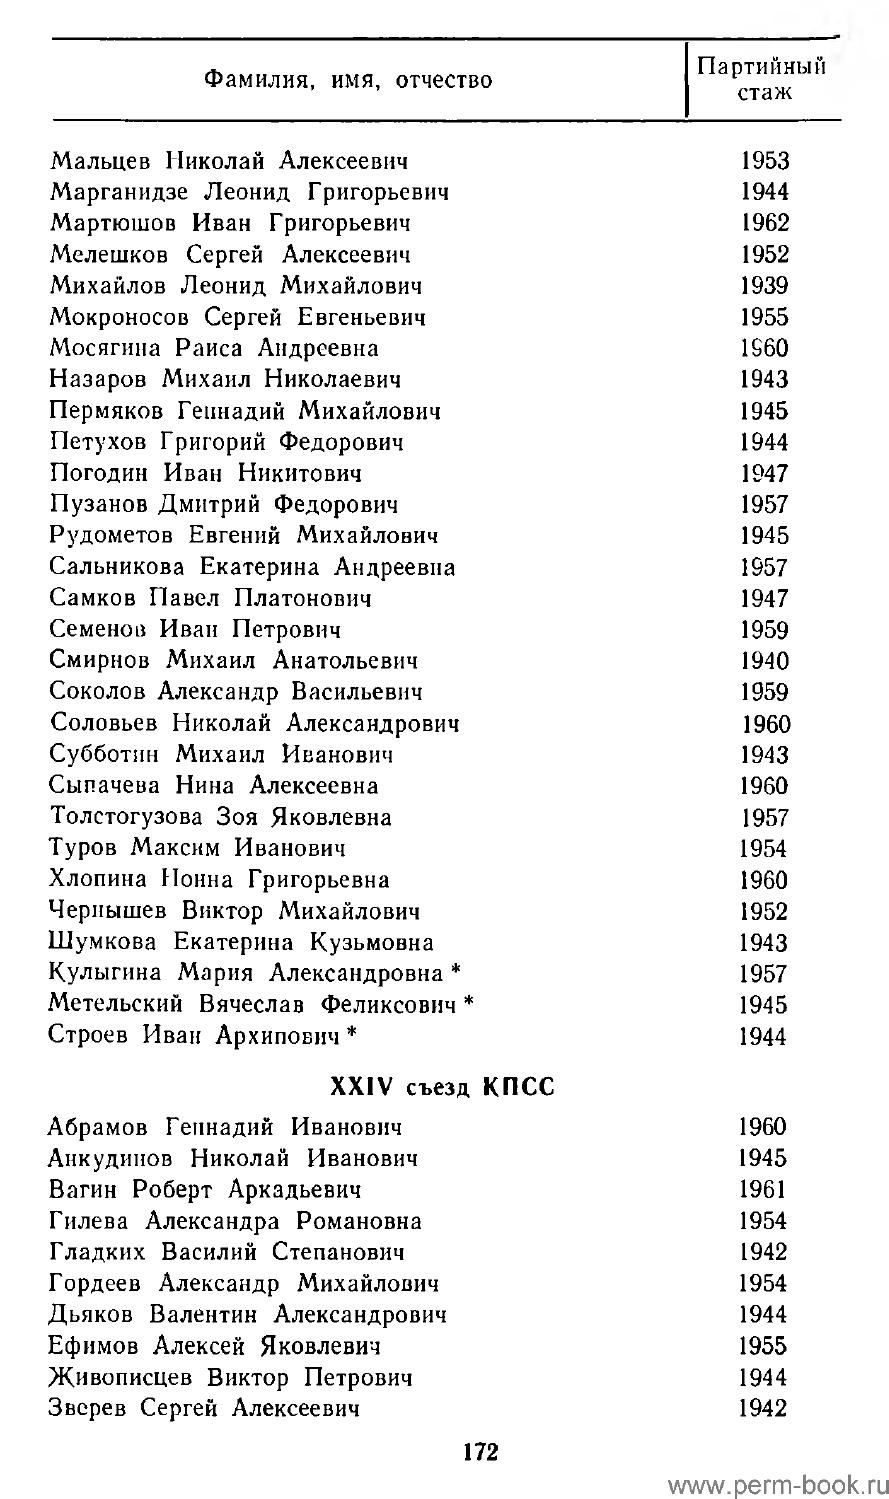 женские имена в сочетании с отчеством евгеньевна